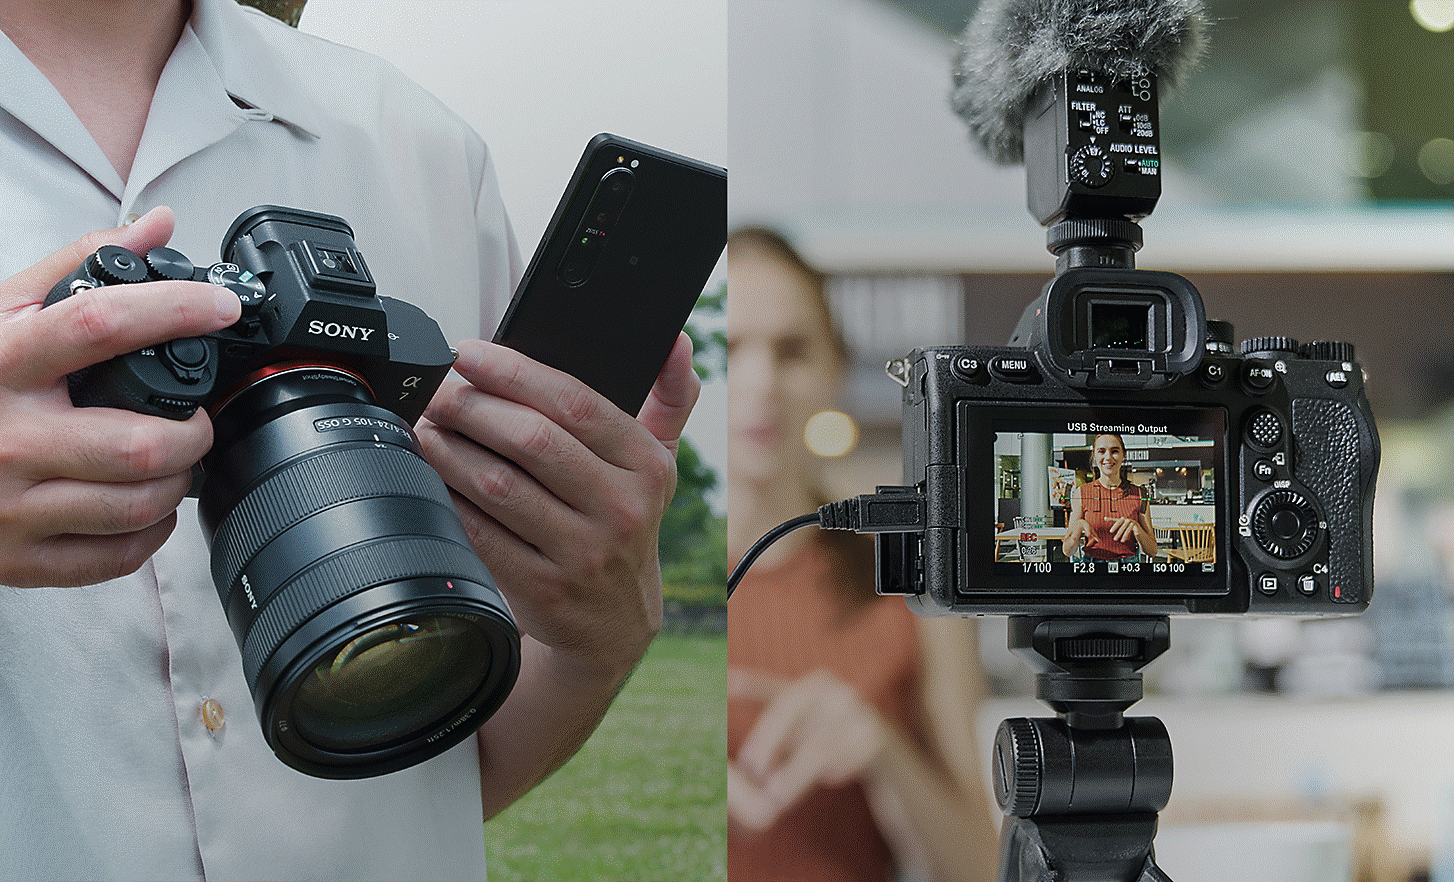 اليسار: صورة فوتوغرافية لشخص يحمل كاميرا Alpha 7 IV وهاتفًا ذكيًا لمشاركة الصور الساكنة أو الأفلام على الفور بعد التصوير؛ اليمين: صورة فوتوغرافية لشخص يقوم بالبث الحي بواسطة كاميرا Alpha 7 IV